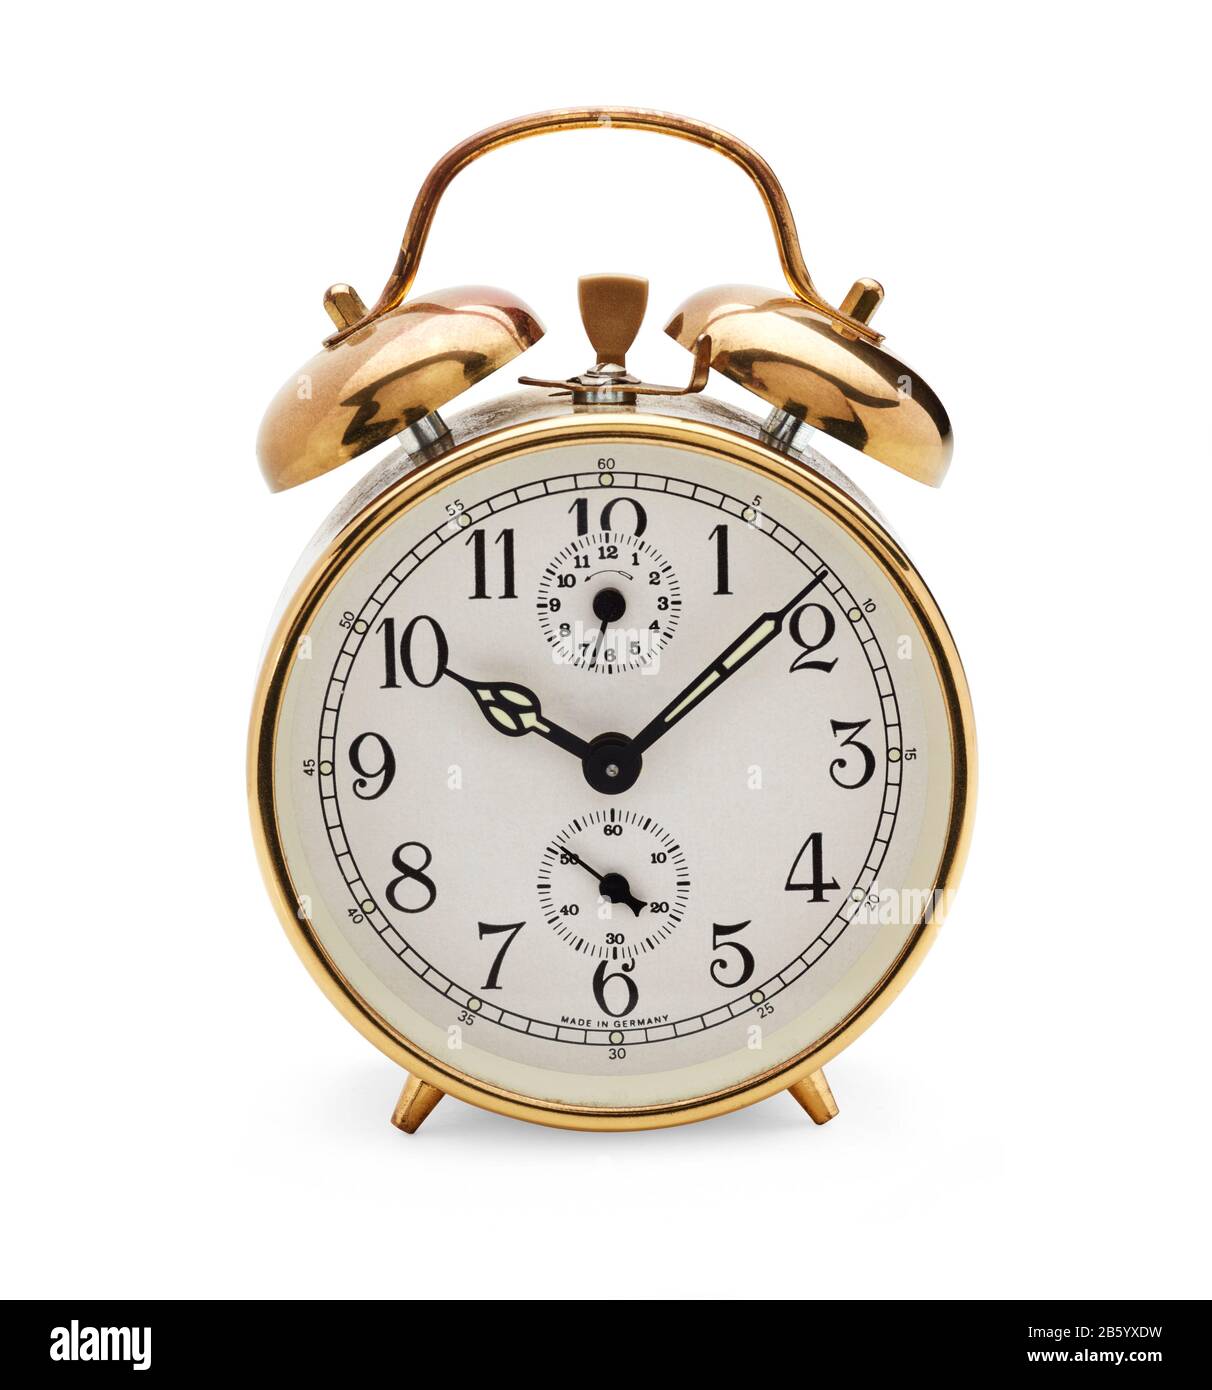 Antiguo reloj despertador mecánico con campanas en la parte superior con las manos a los ocho minutos y los diez Foto de stock